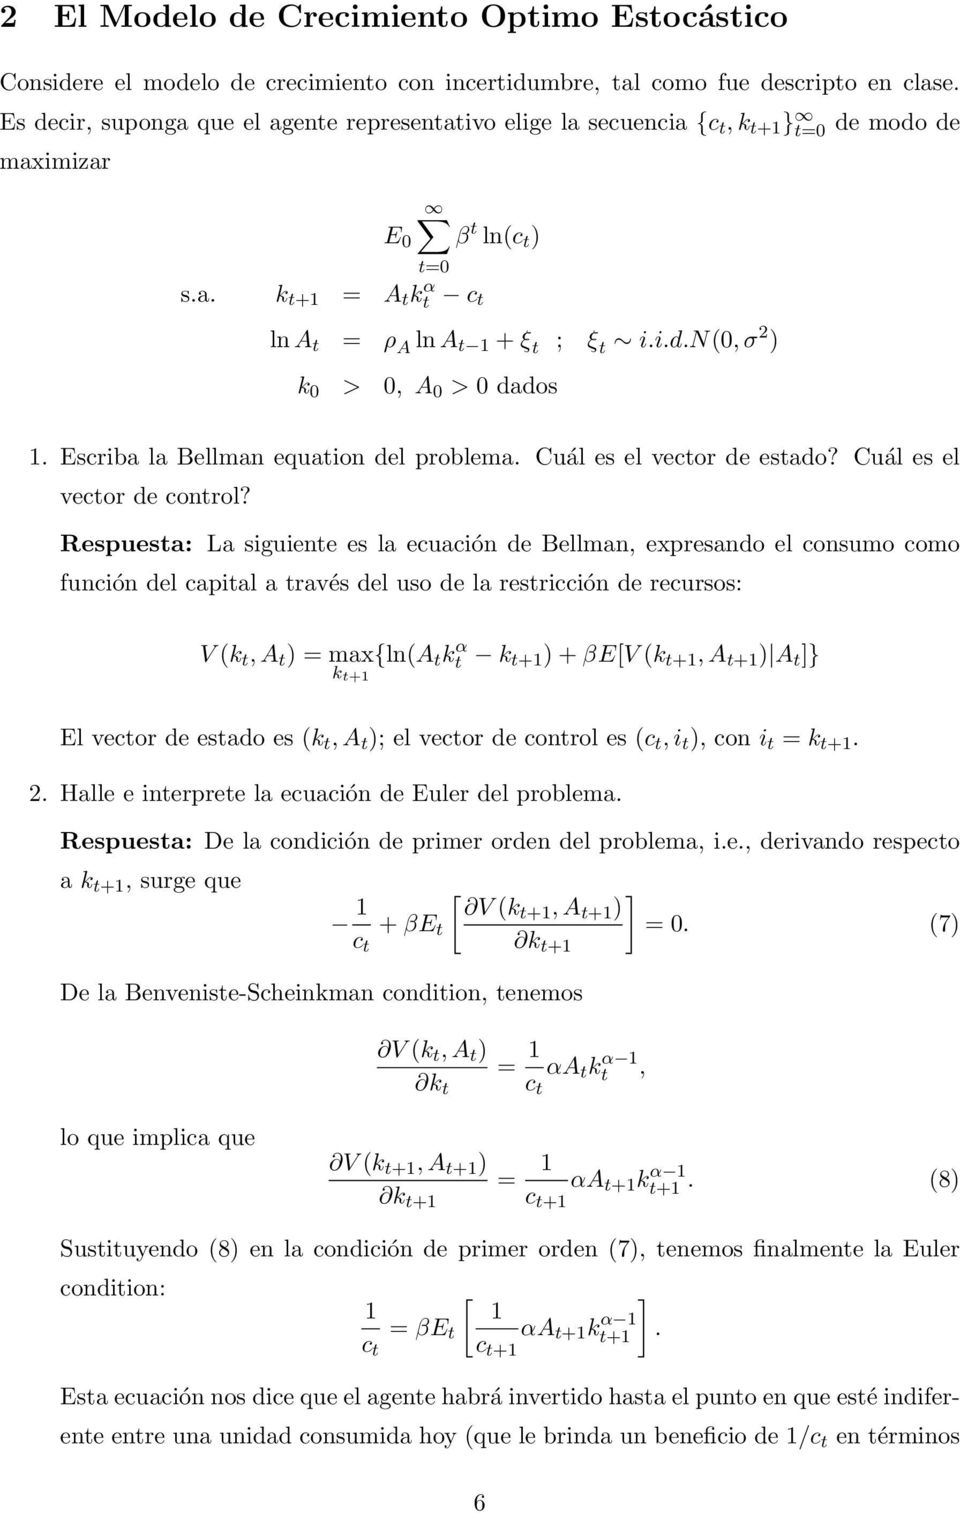 Escriba la Bellman equaion del problema. Cuál es el vecor de esado? Cuál es el vecor de conrol?